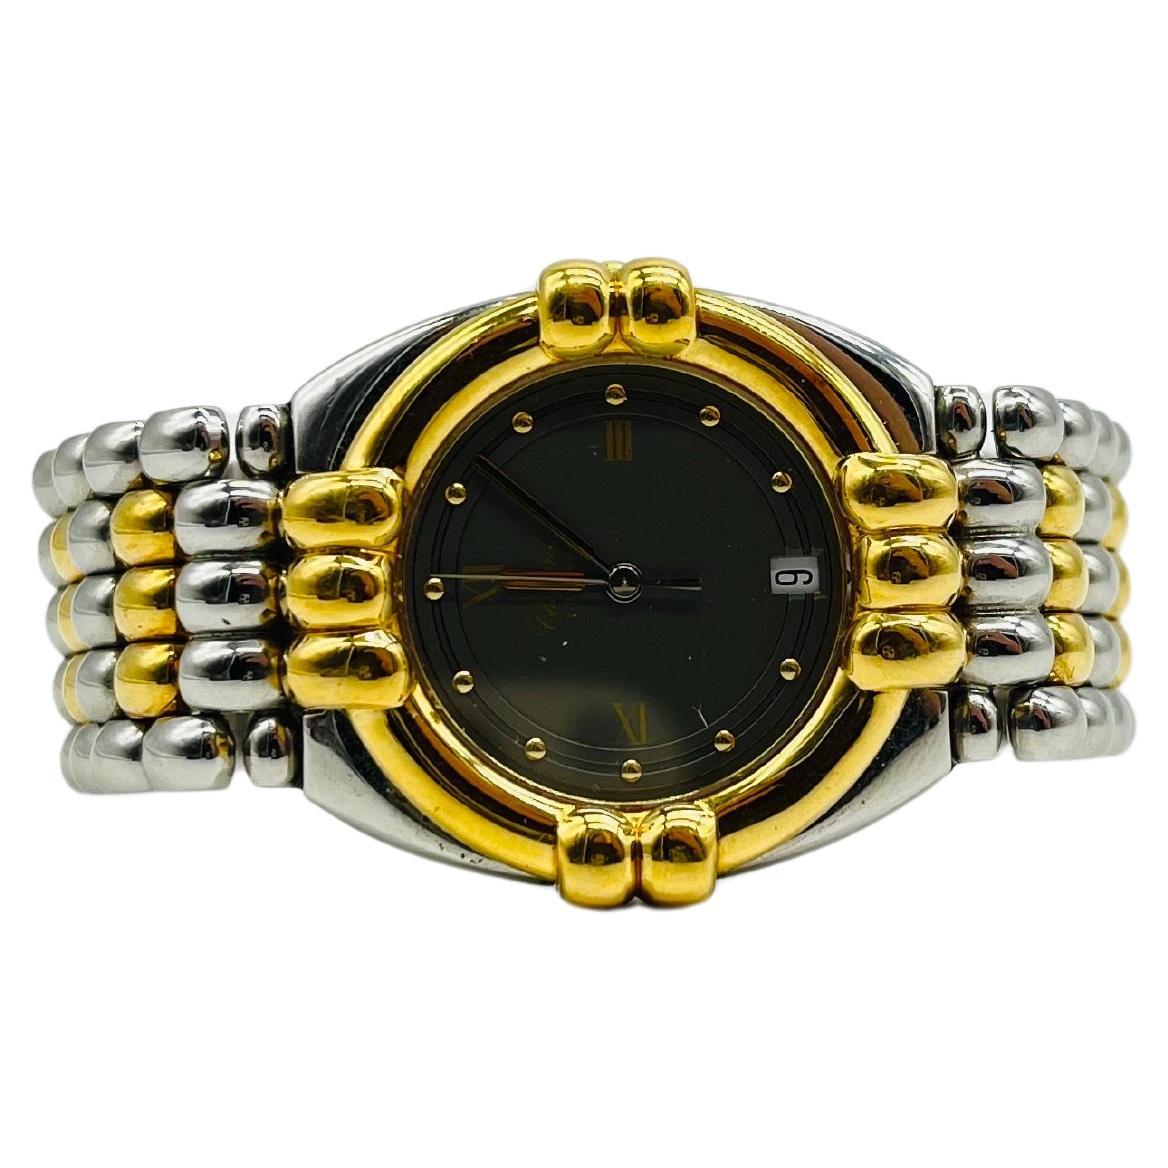 Majestic Chopard genve wrist watch Gstaad 33/8120 For Sale 1